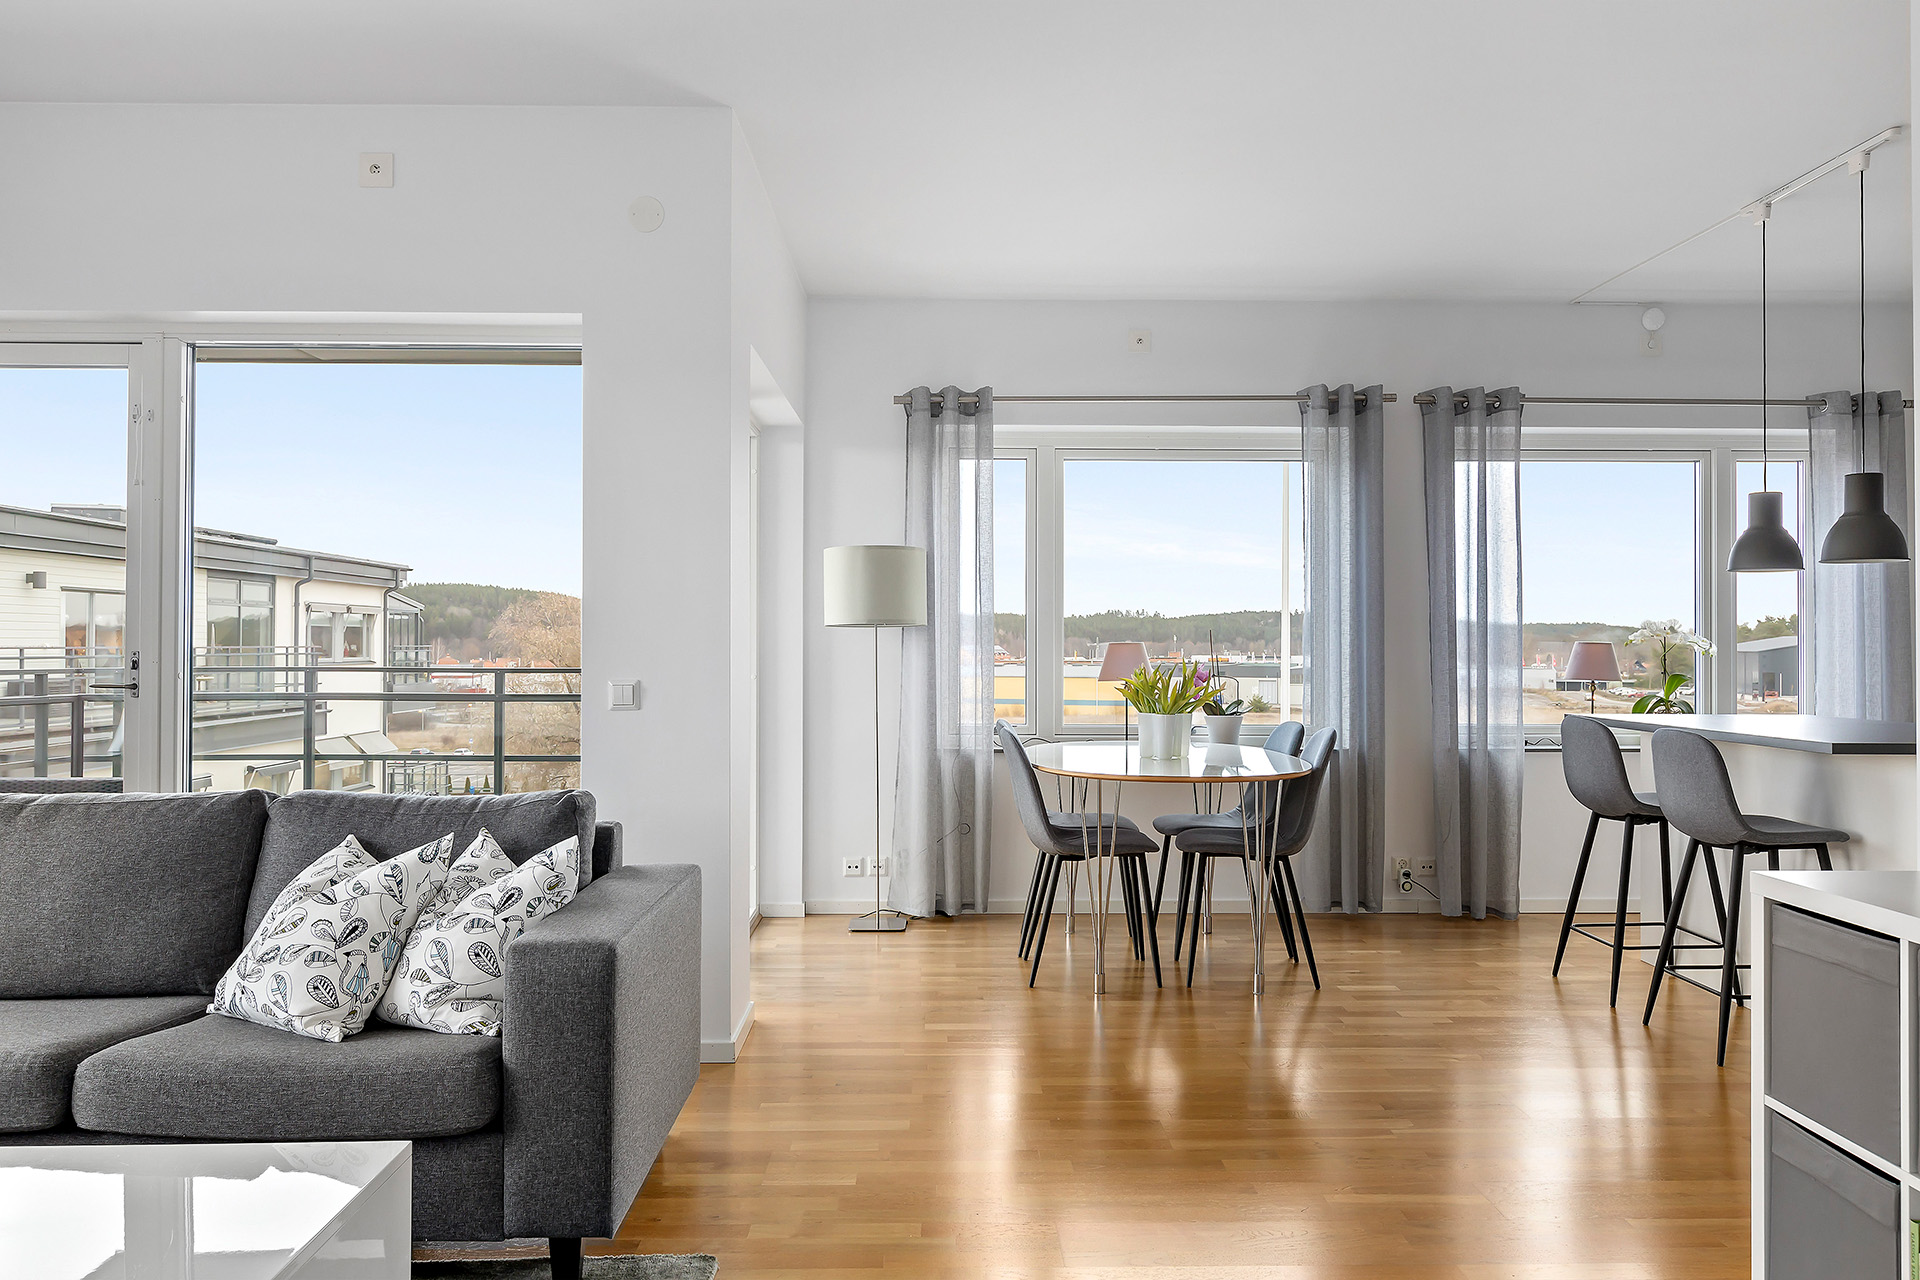 Köp bostad - Ljus möblerad lägenhet med fin utsikt